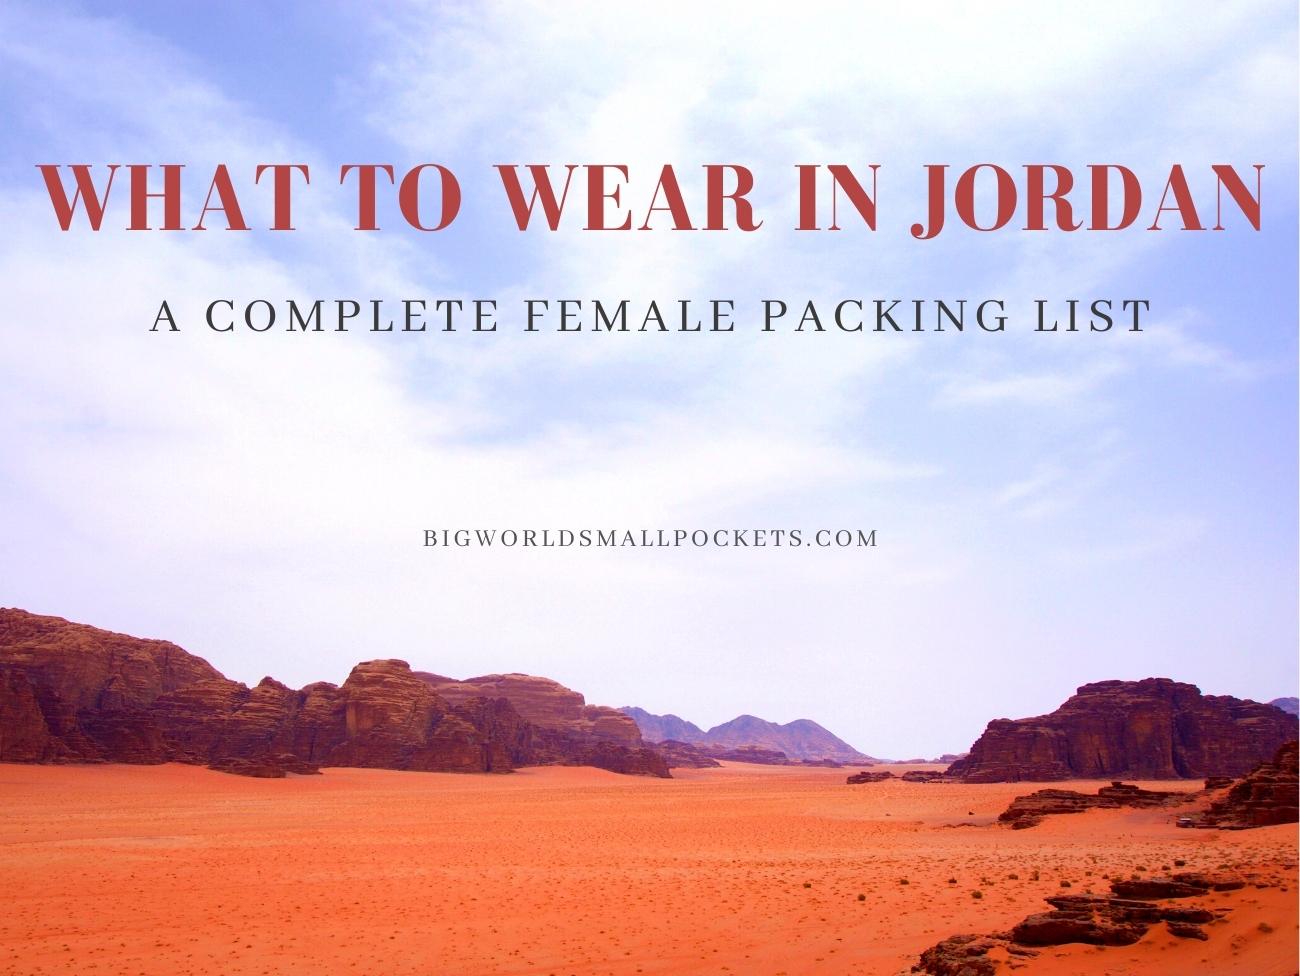 What to Wear in Jordan